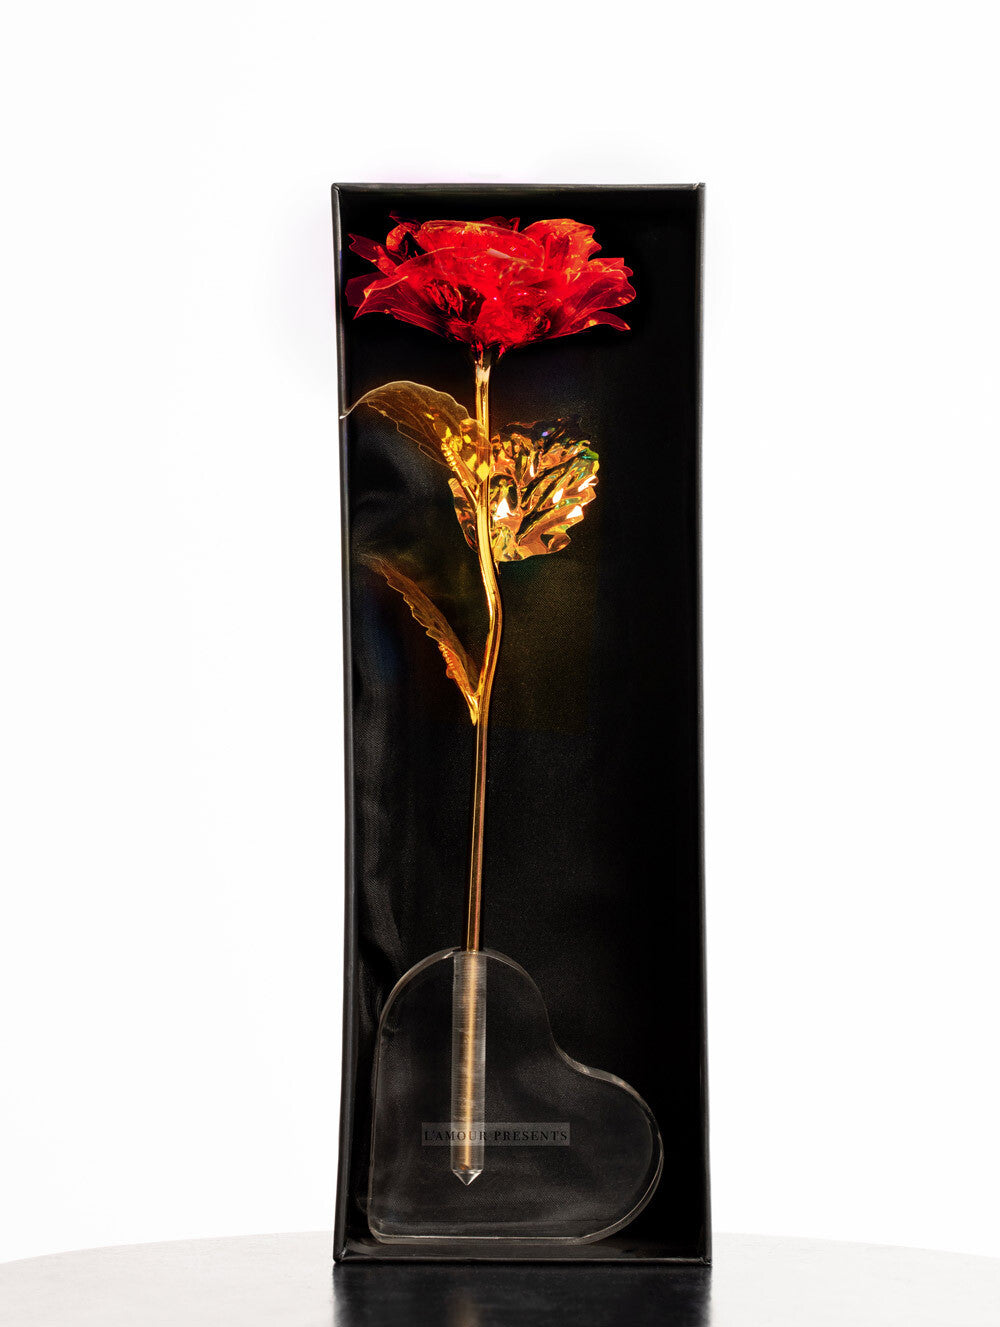 Świecąca Czerwona Róża Lamour z Sercem W Firmowym Pudełku -